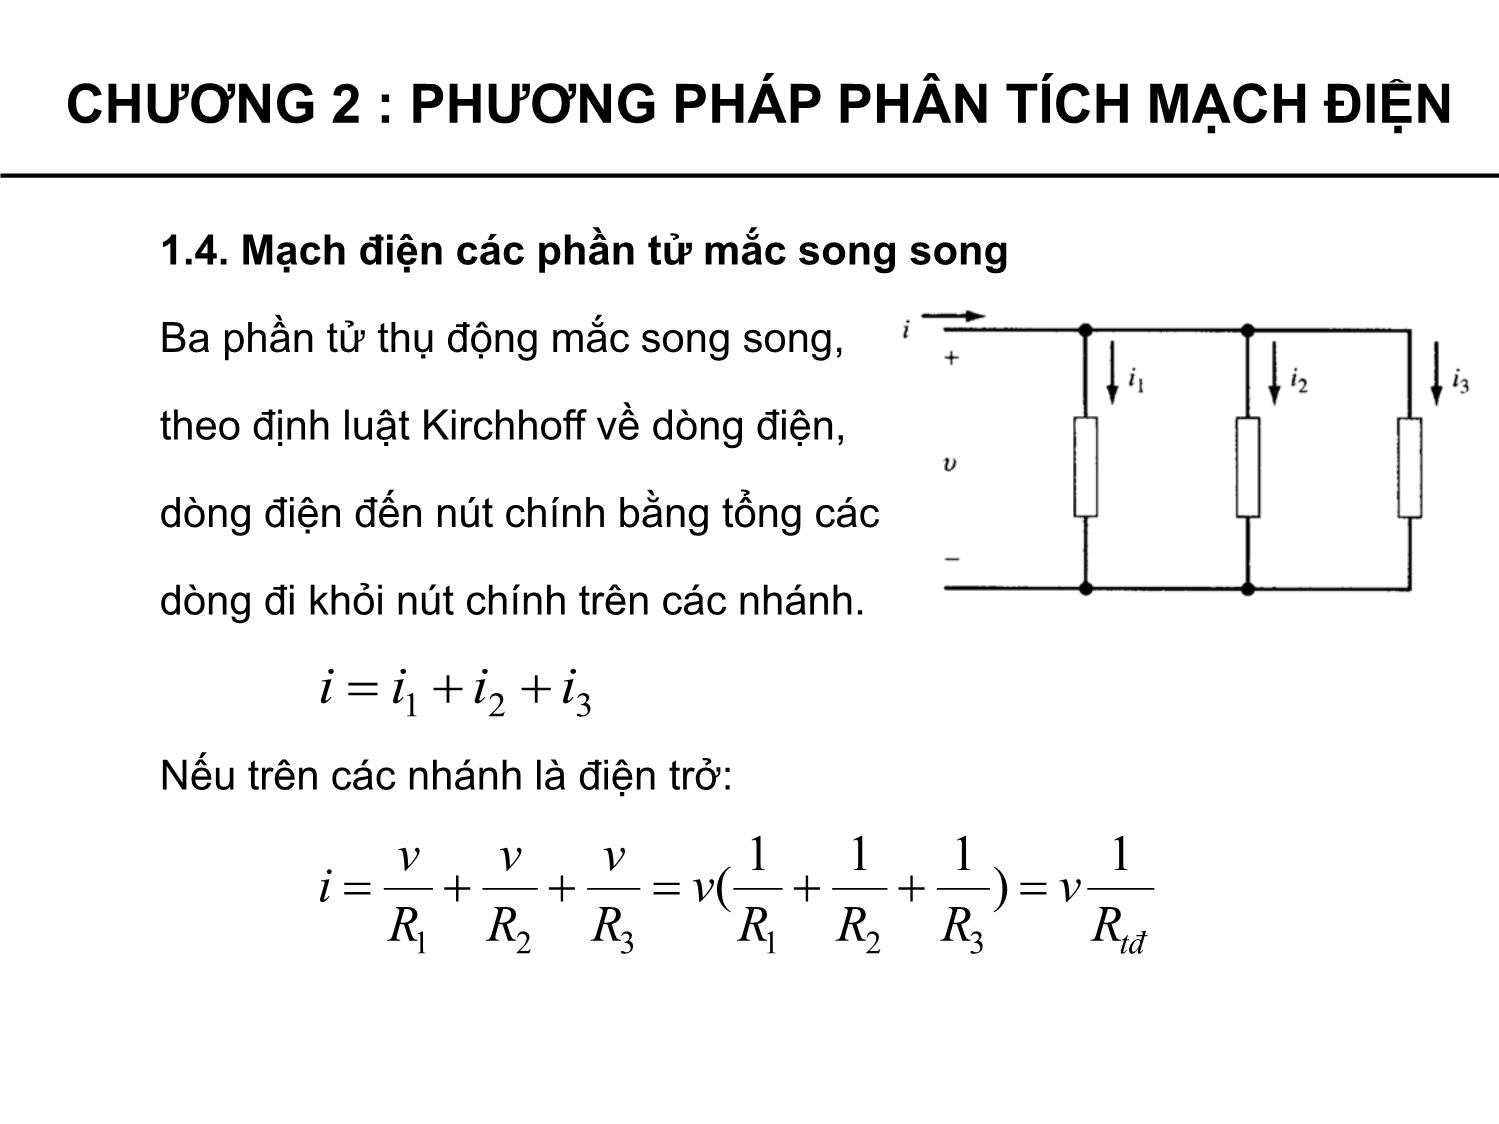 Bài giảng Lý thuyết mạch - Chương 2: Phương pháp phân tích mạch điện - Phạm Khánh Tùng trang 9